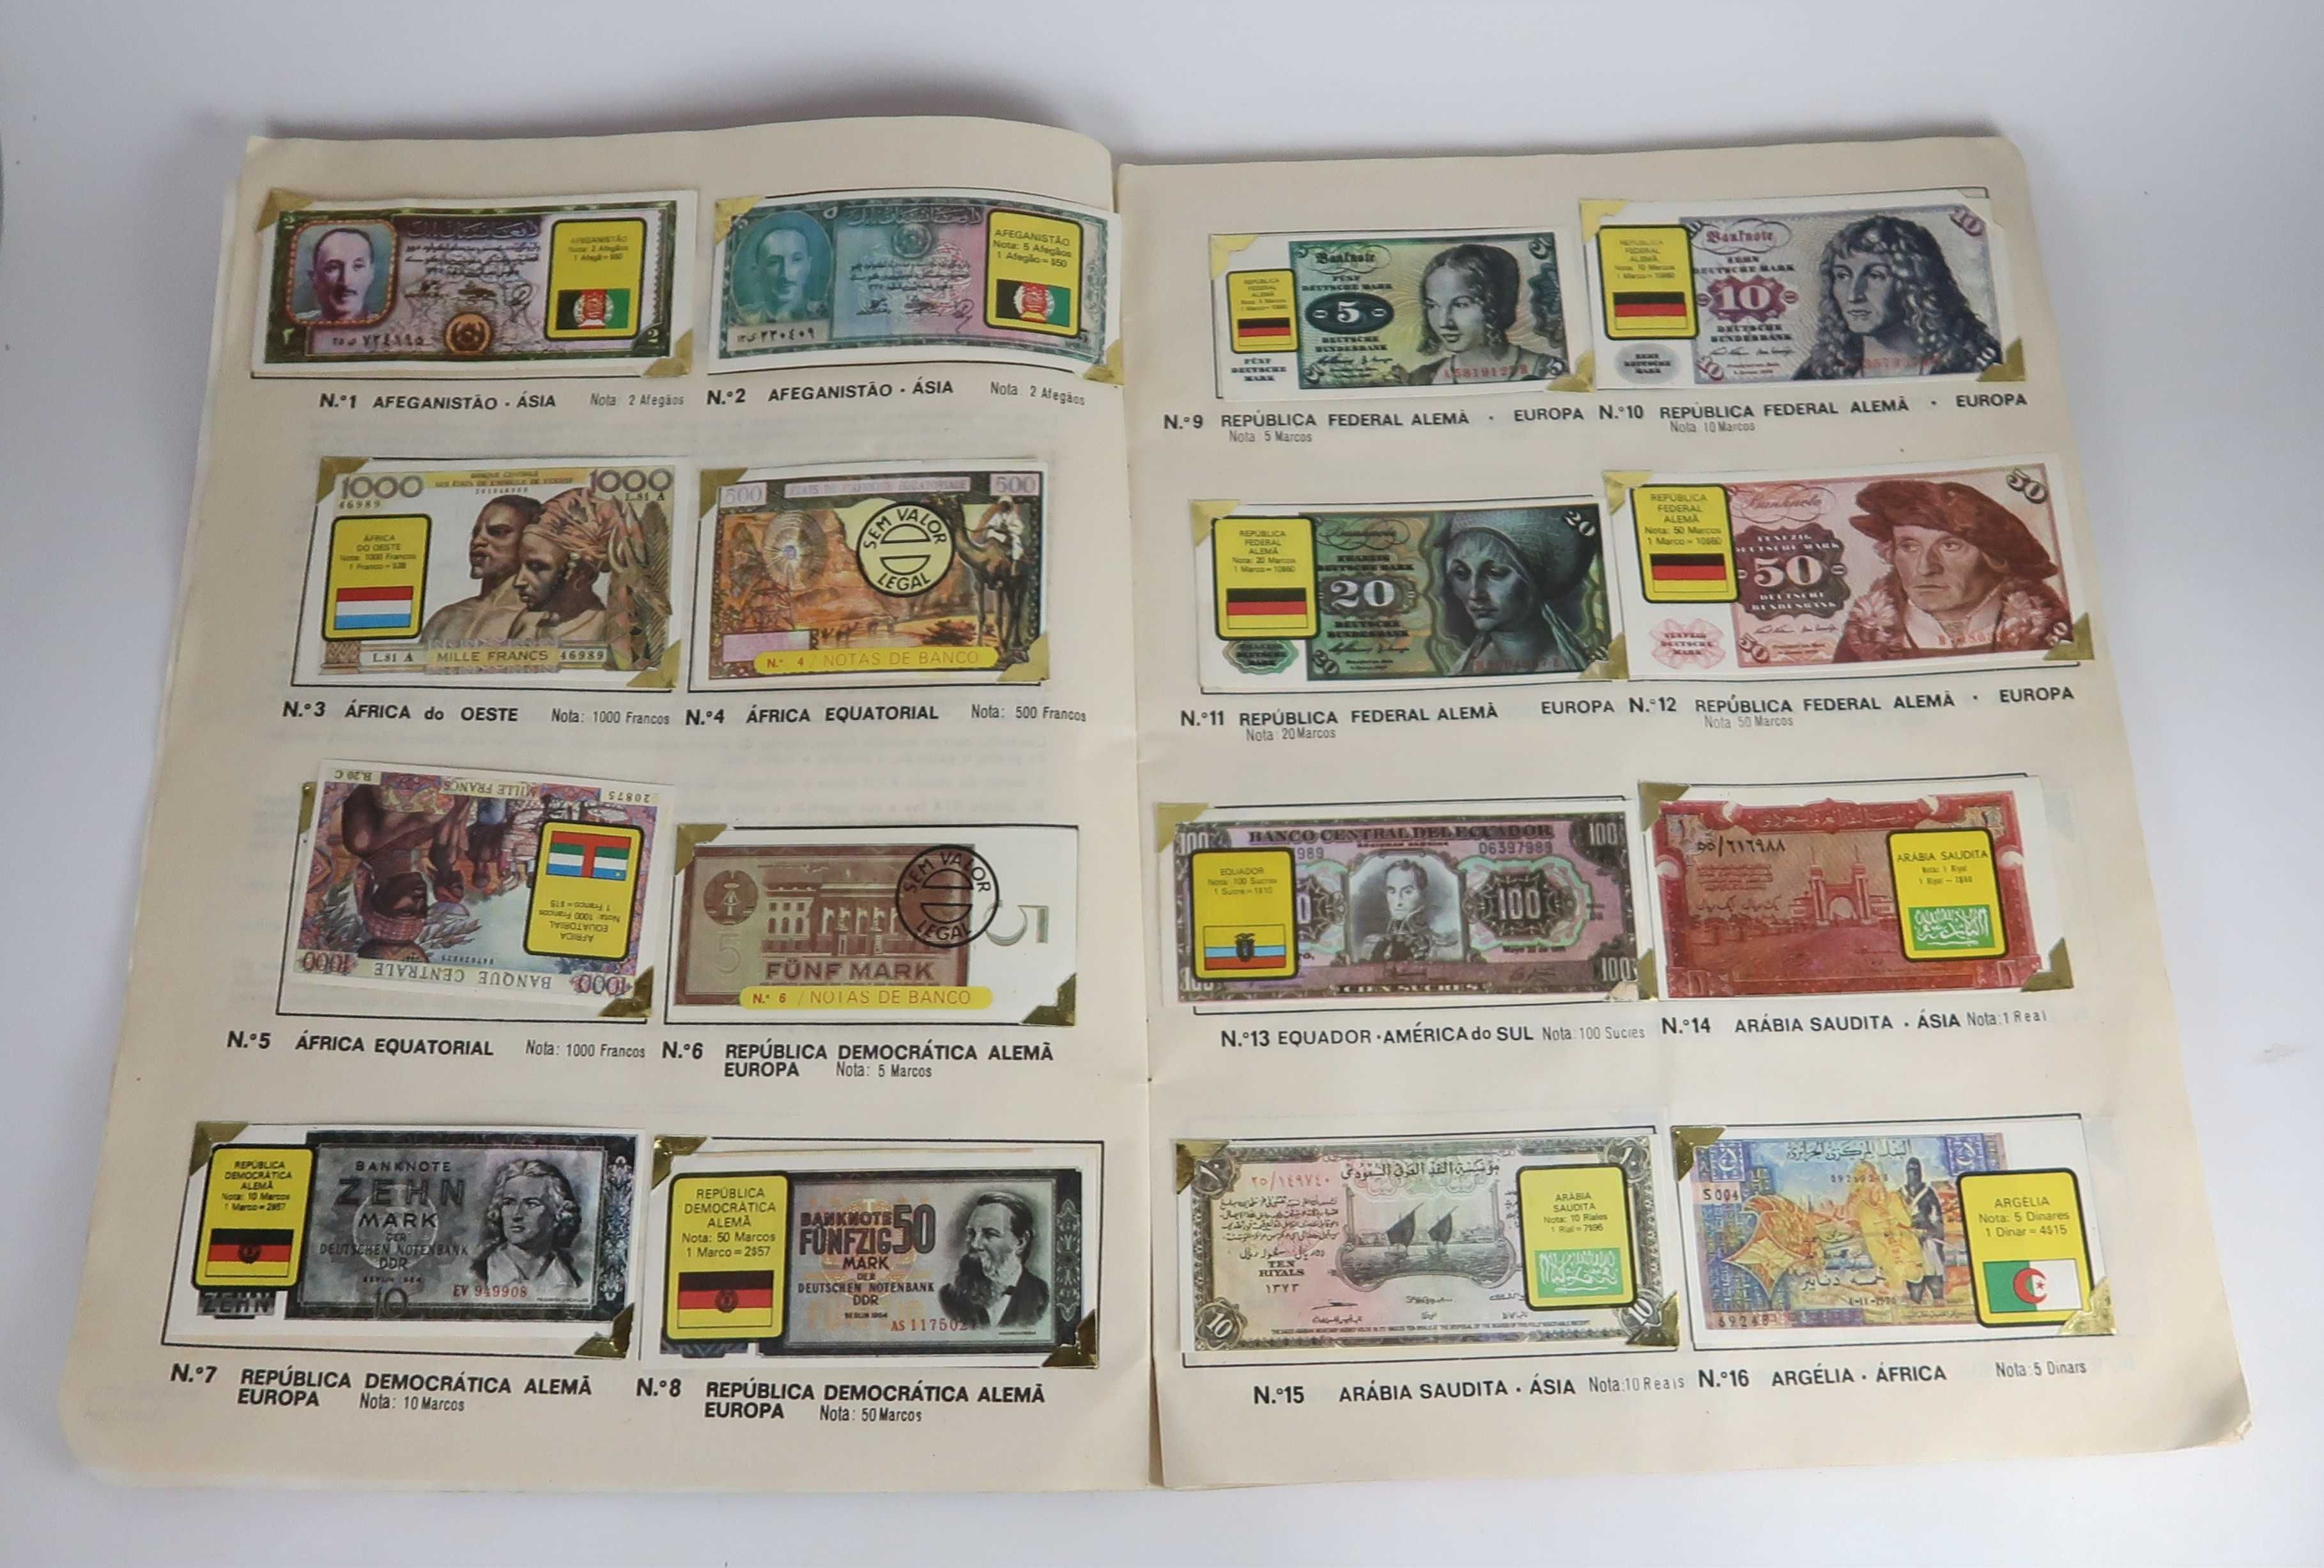 Caderneta "Notas De Banco De Todo O Mundo" (COMPLETA)